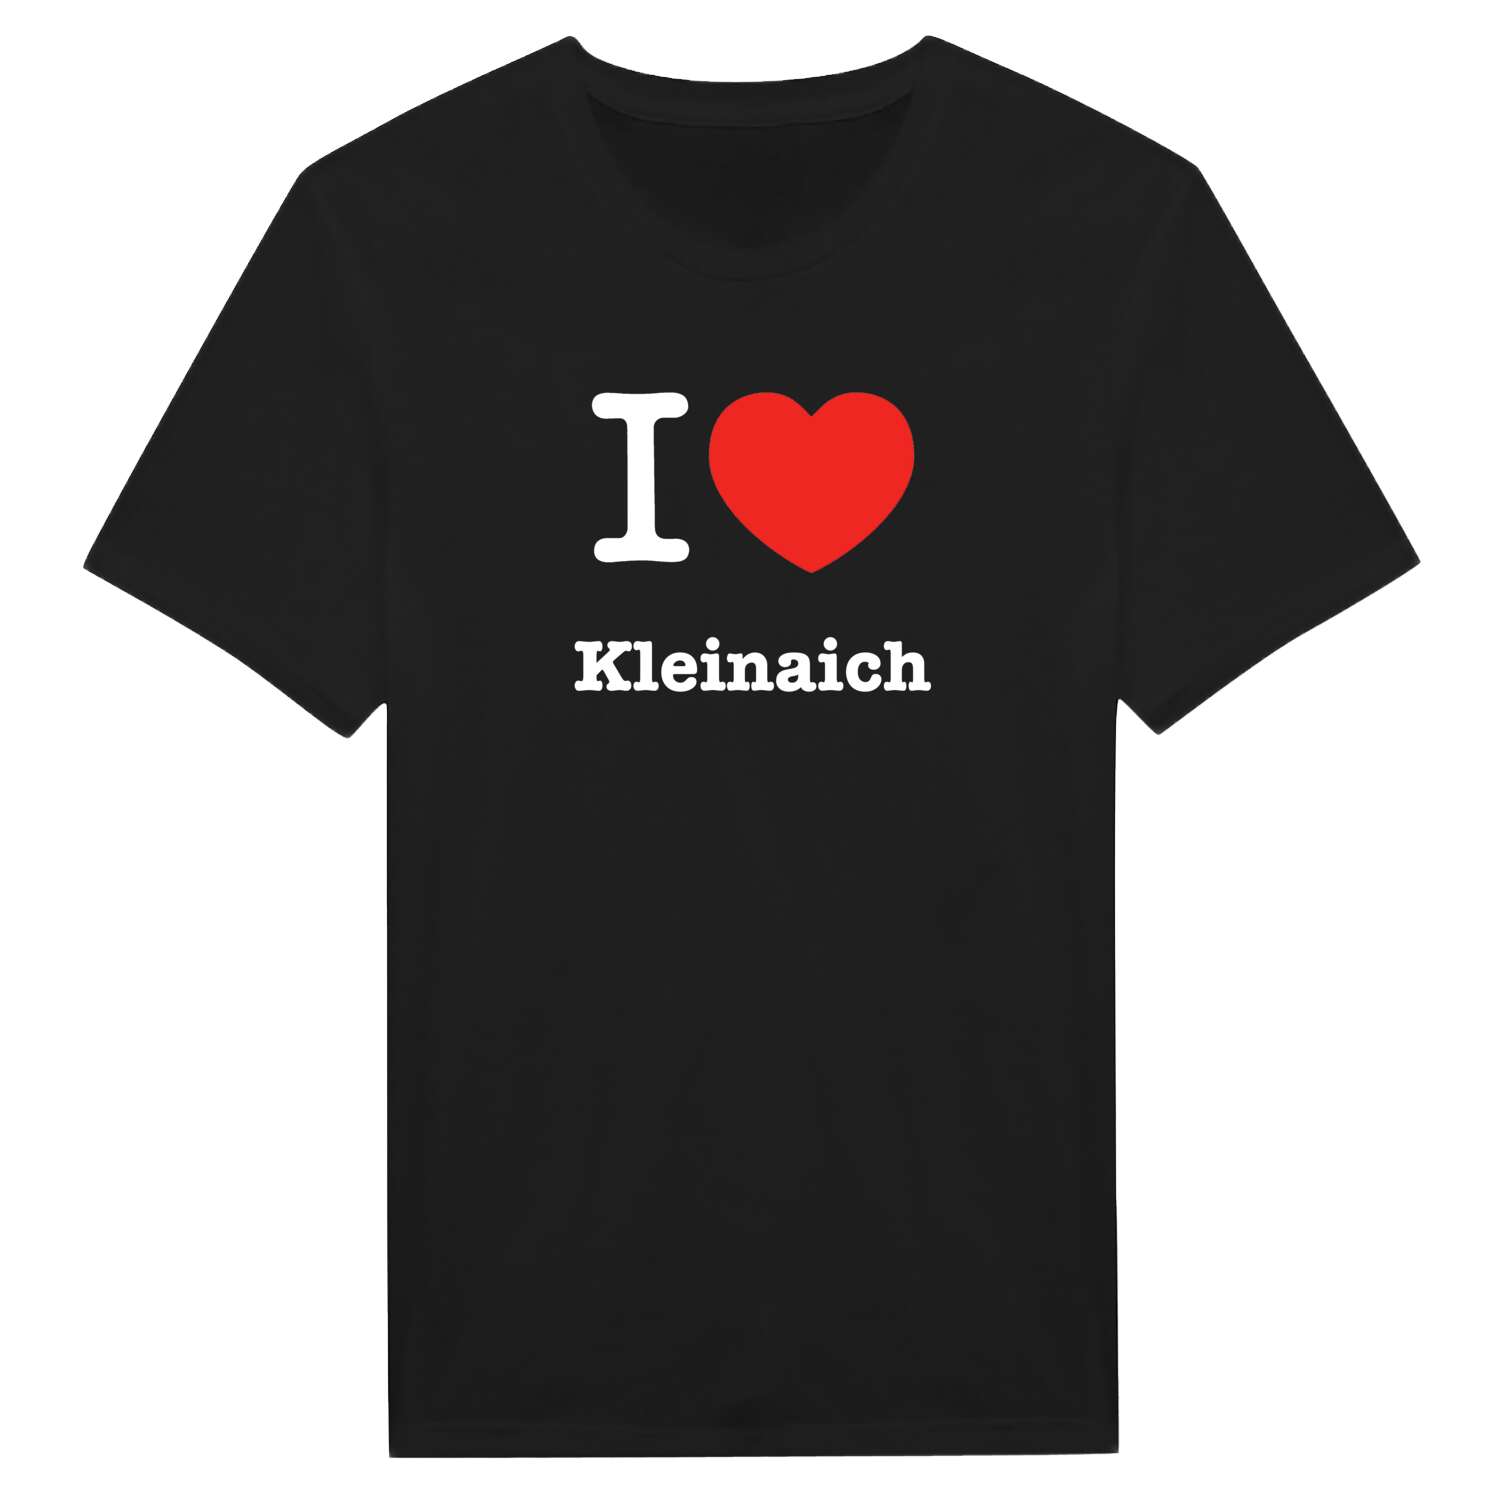 Kleinaich T-Shirt »I love«